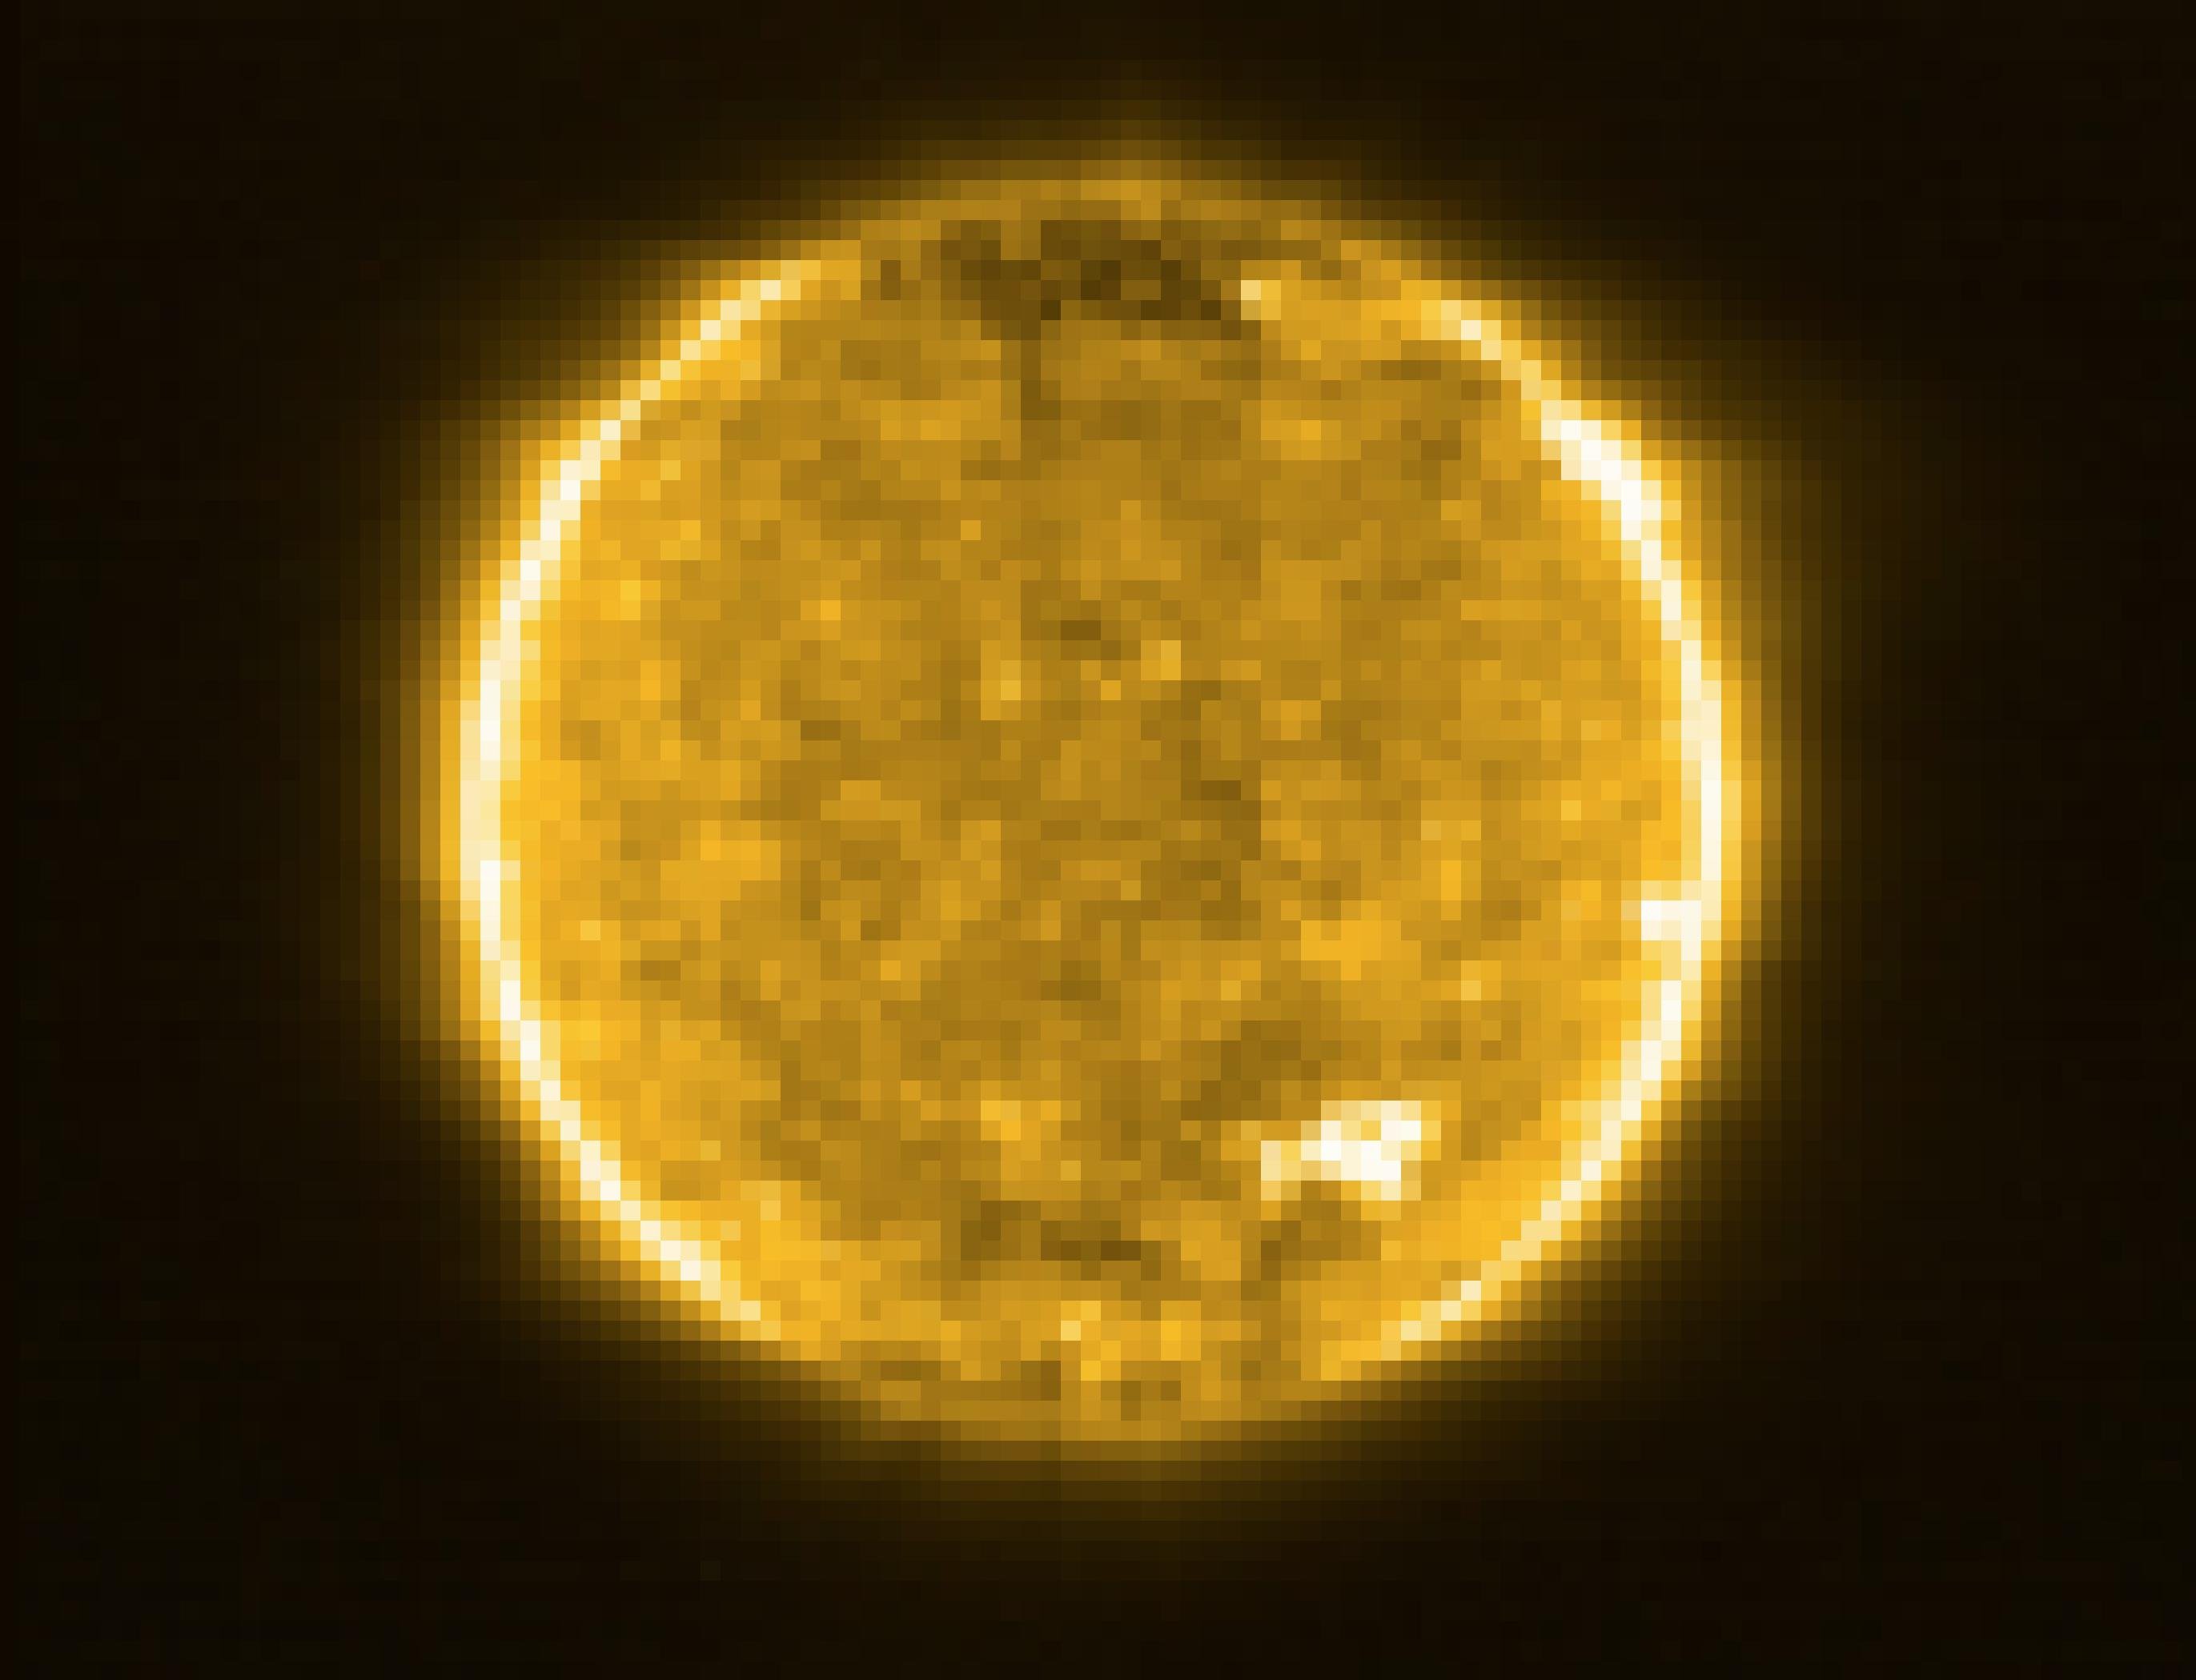 Das Foto zeigt unsere Sonne als großen gelben Ball mit zahlreichen, unregelmäßigen, mal helleren, mal dunkleren Strukturen darauf. Am Rand ist das Bild heller, so als würde es dort stärker leuchten und rings um den Ball sind verwaschene, strahlenartige Strukturen zu sehen, die von der Sonne weggerichtet sind. Das Bild hat die ESA-Sonde Solar Orbiter am 30. Mai 2020 im extremen ultravioletten Wellenbereich aufgenommen. Da das menschliche Auge kein Ultraviolett sehen kann, wurde das Foto gelb eingefärbt. Auf dem Bild sind feinste Strukturen zu erkennen, die den Astrophysikern bislang unbekannt waren. Mithilfe der Sonde hoffen die Forscher, unsere Sonne in Zukunft besser verstehen zu können. Unsere Sonne gilt als ein durchschnittlich großer Stern in der Milchstraßen. Sie existiert seit 4,5 Milliarden Jahren und wird noch lange weiterleuchten. Doch in einem Alter von rund zwölf Milliarden Jahren wird sie sich dramatisch wandeln und zu einem Roten Riesenstern werden.